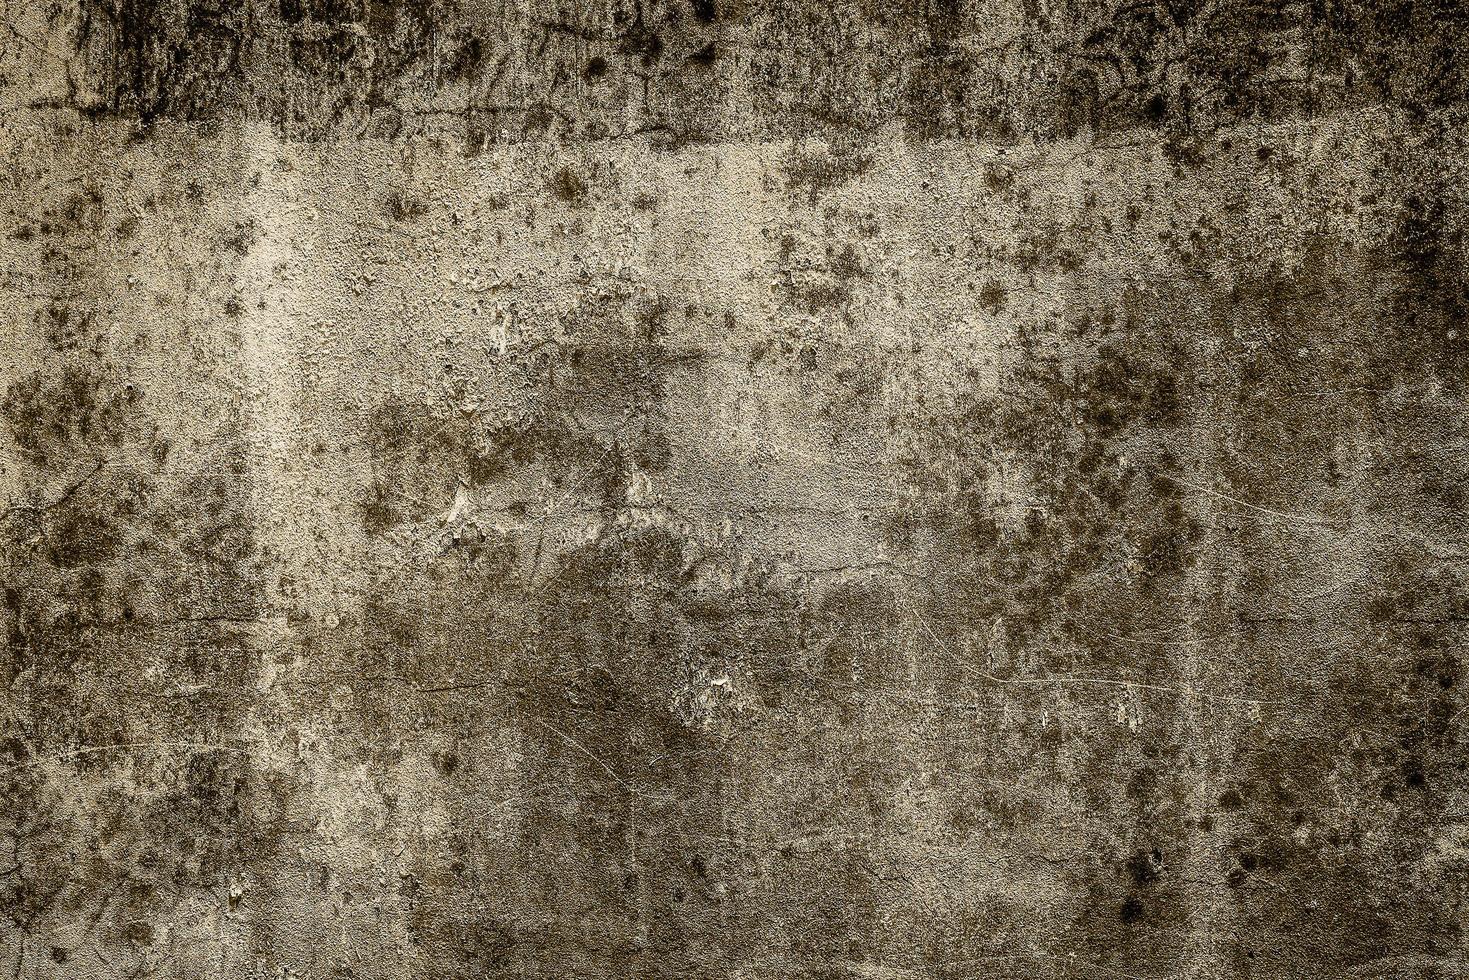 velhas texturas de concreto sujo para o fundo - efeito de filtro vintage  2197373 Foto de stock no Vecteezy